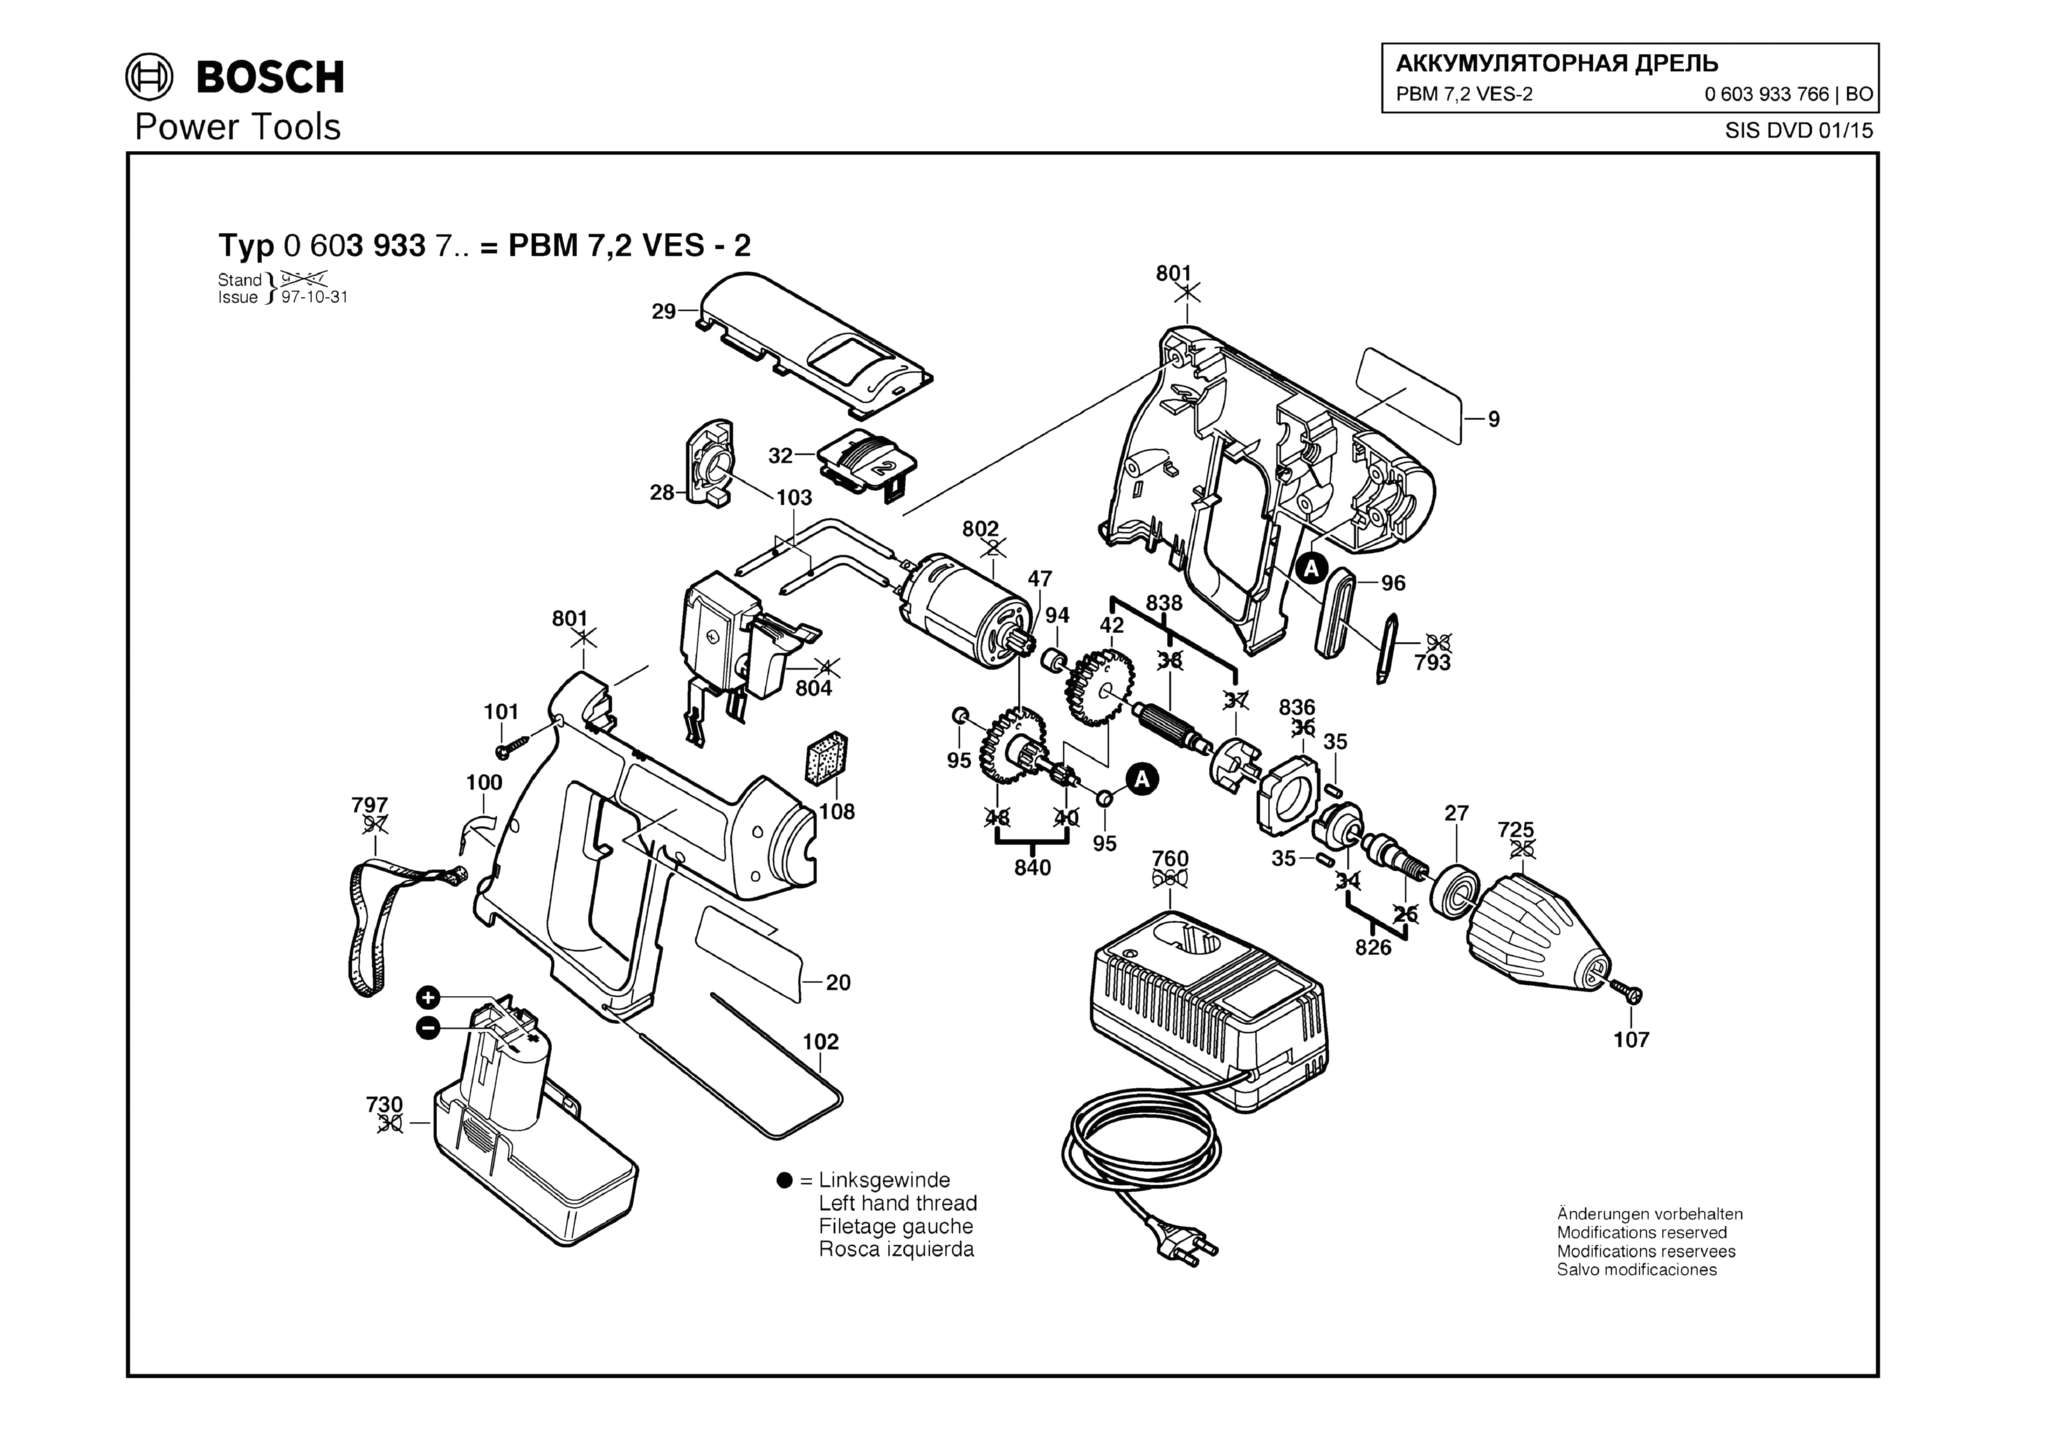 Запчасти, схема и деталировка Bosch PBM 7,2 VES-2 (ТИП 0603933766)